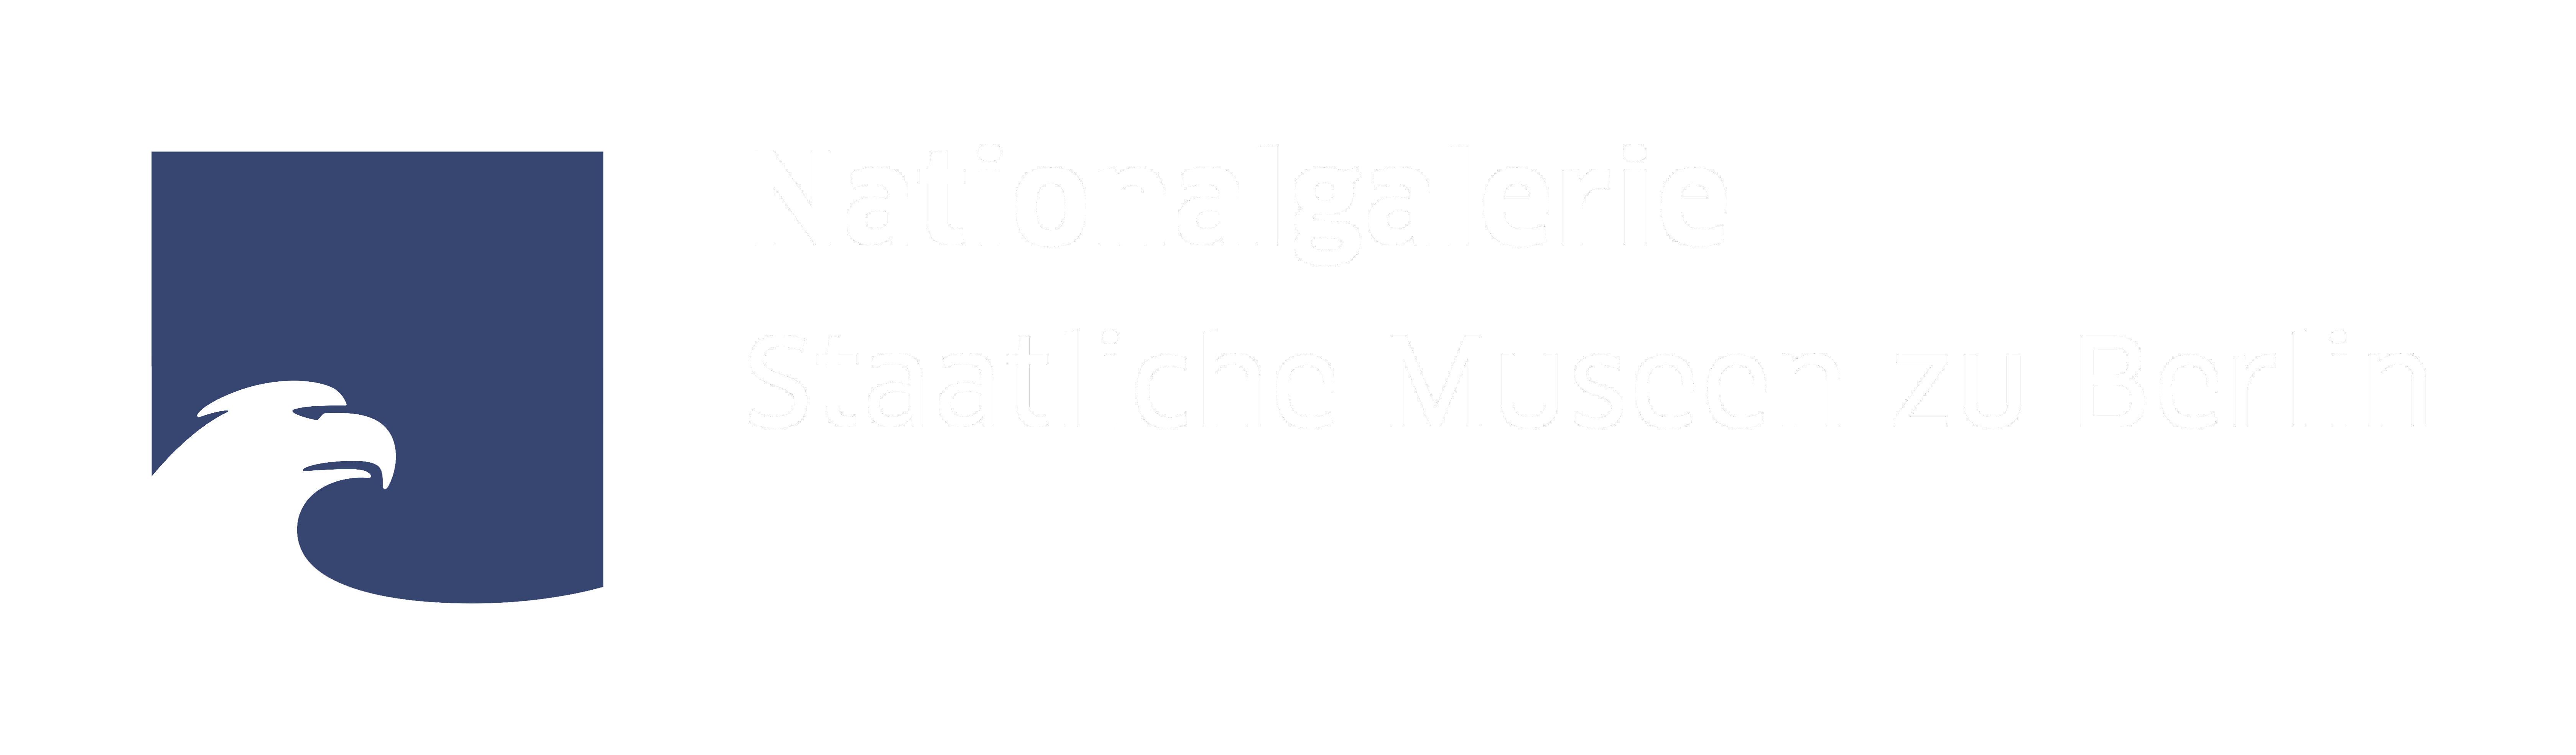 Zum Museum Alte Nationalgalerie Berlin